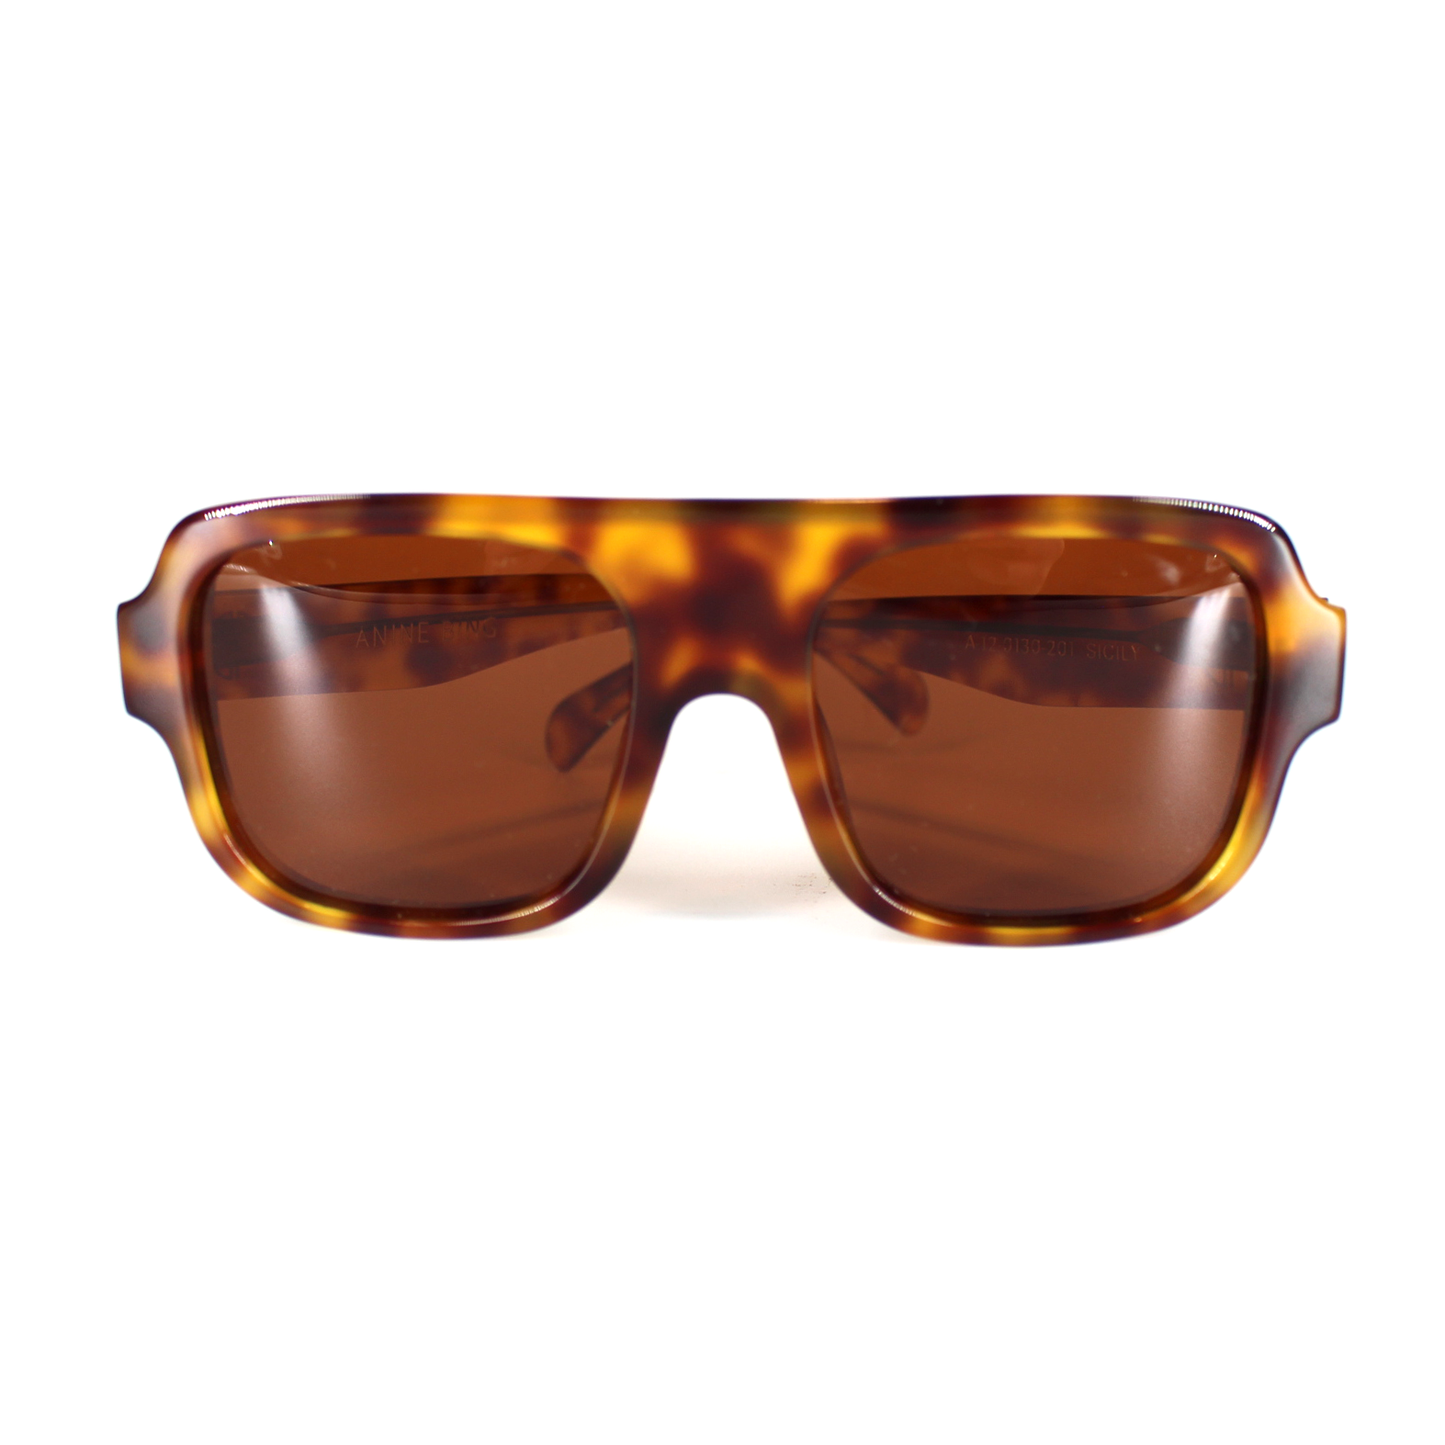 Anine Bing Sicily Tortoiseshell Sunglasses